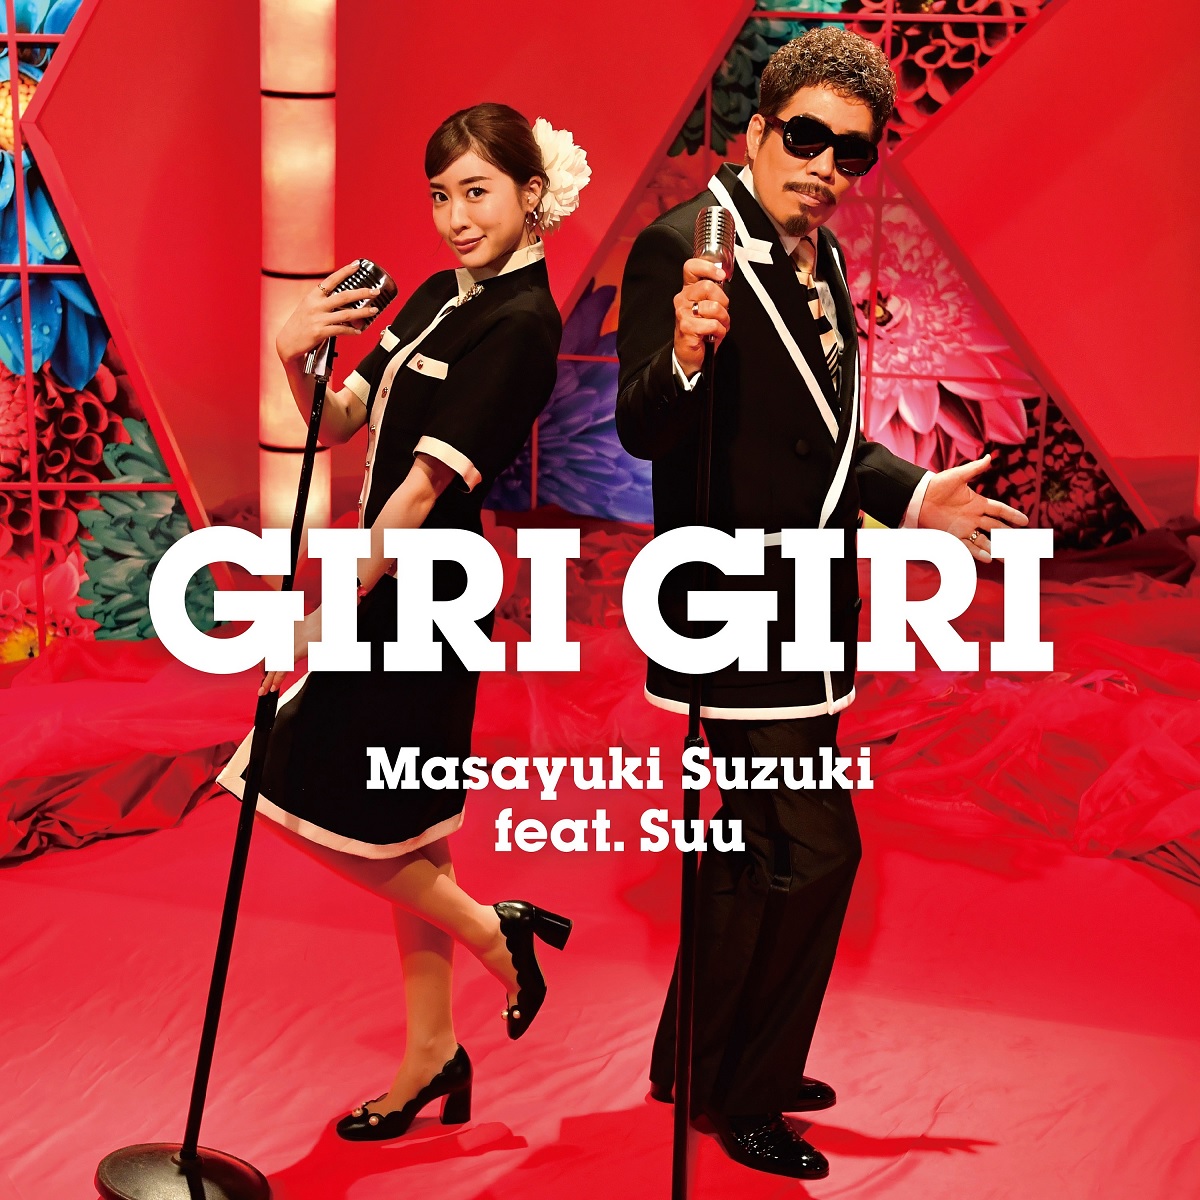 Cover for『Masayuki Suzuki feat. Suu - GIRI GIRI』from the release『GIRI GIRI』